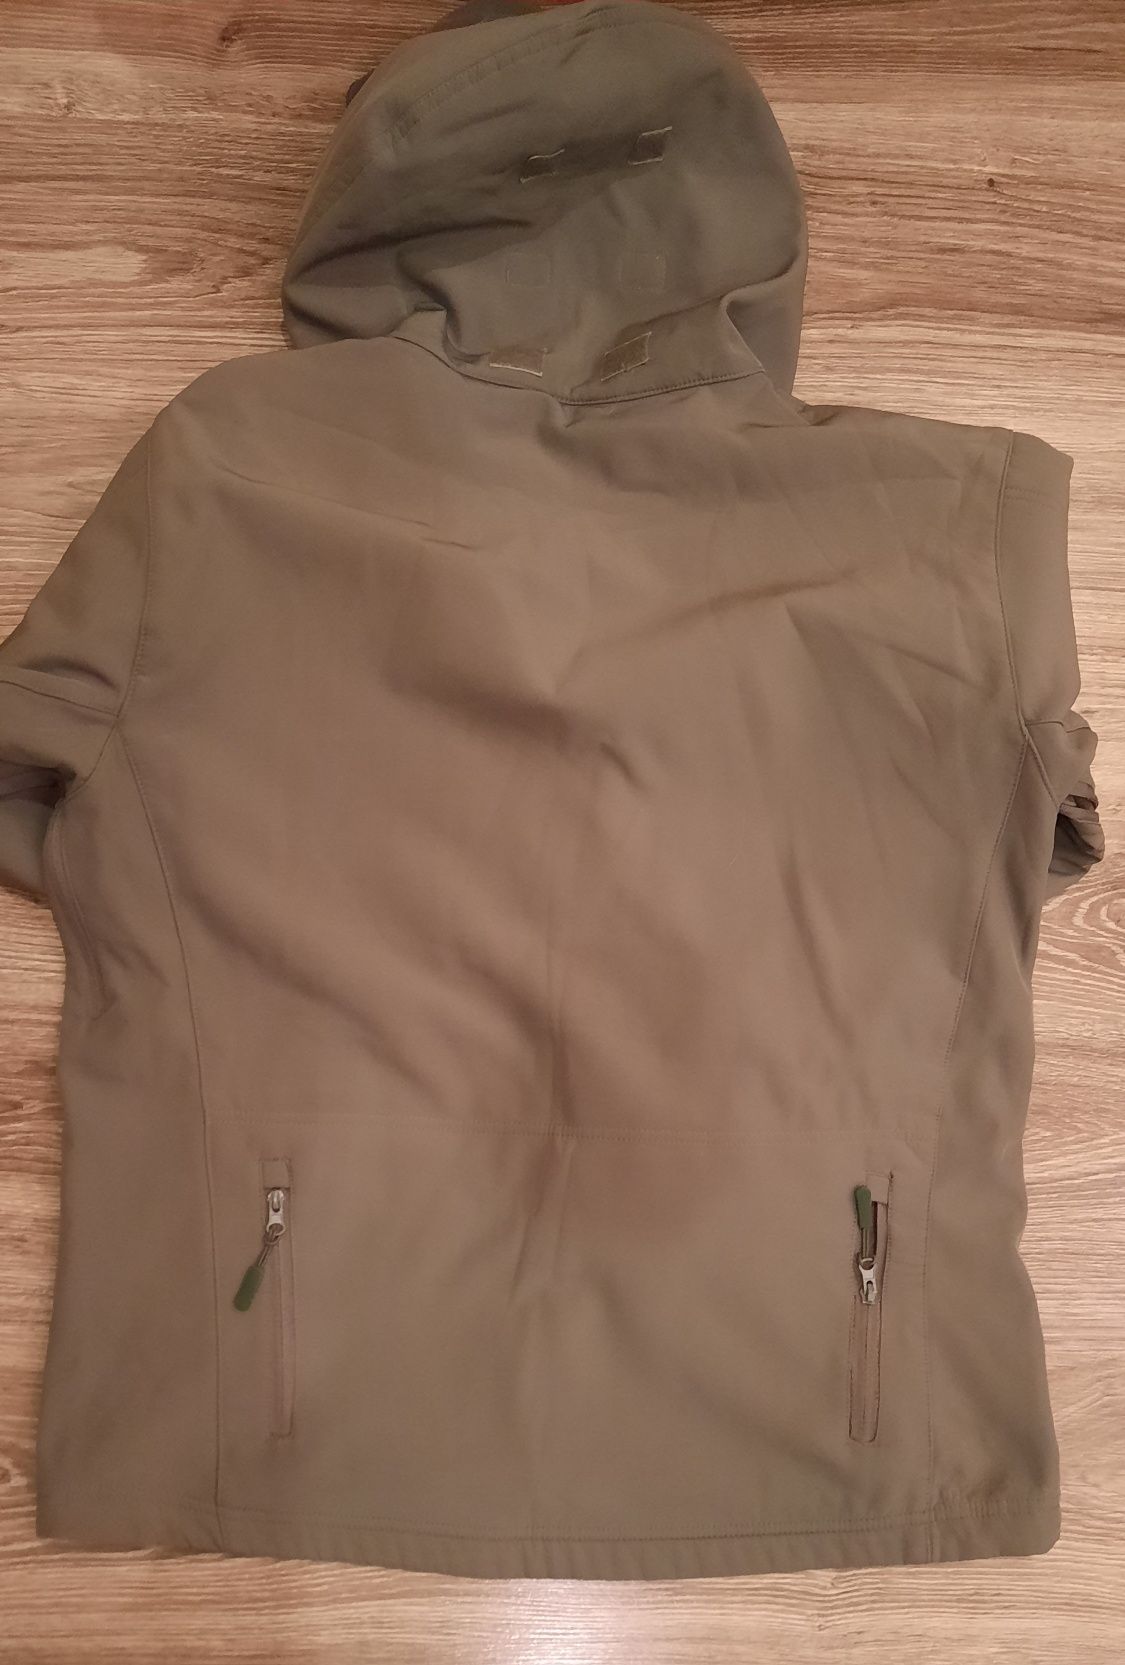 Курточка мужская xxx - large (размер : 54)